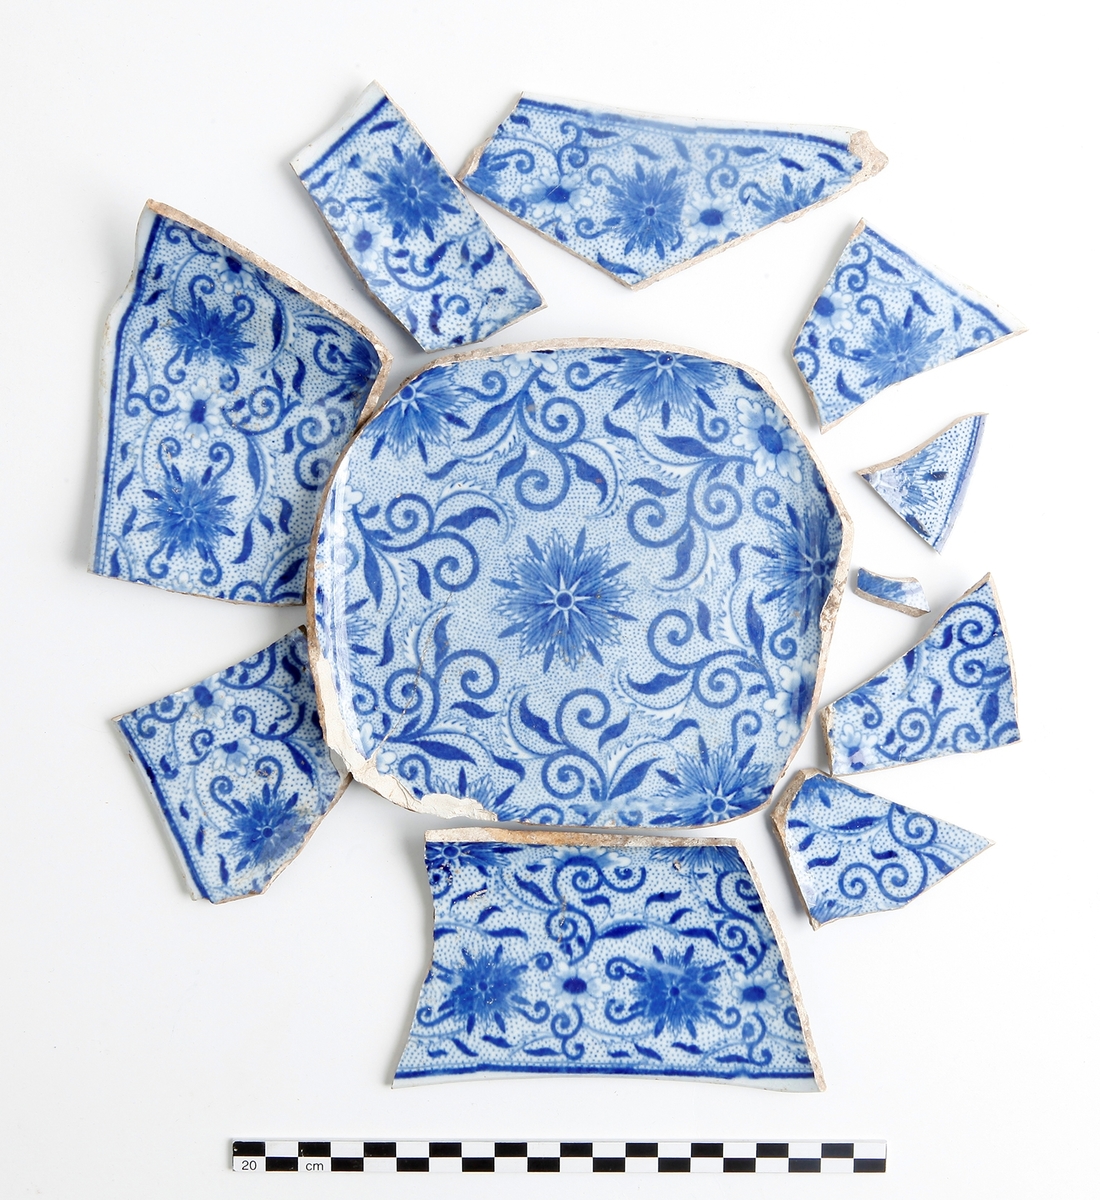 Skål. Keramik, flintgods. Närmast komplett serveringsskål med fyrkantig bottenring. Överföringstryck med blåvit prickmönstrad blomdekor på både ut- och insida. Datering 1800-tal.